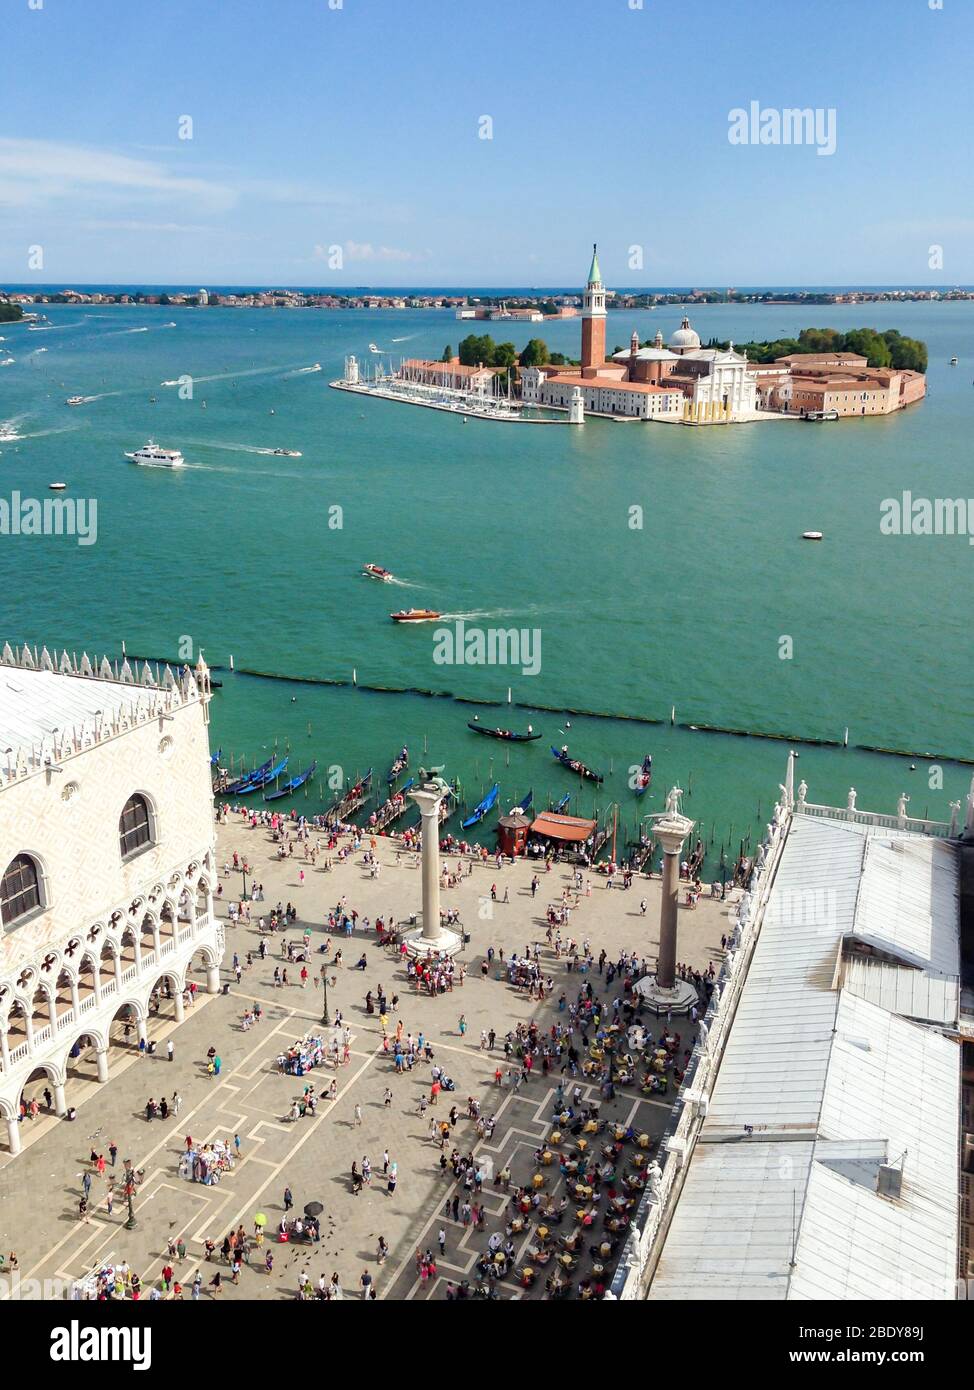 Panoramic Aerial view of Venice, Piazza San Marco in Venice, Italy. San Giorgio di Maggiore church in the background. Stock Photo